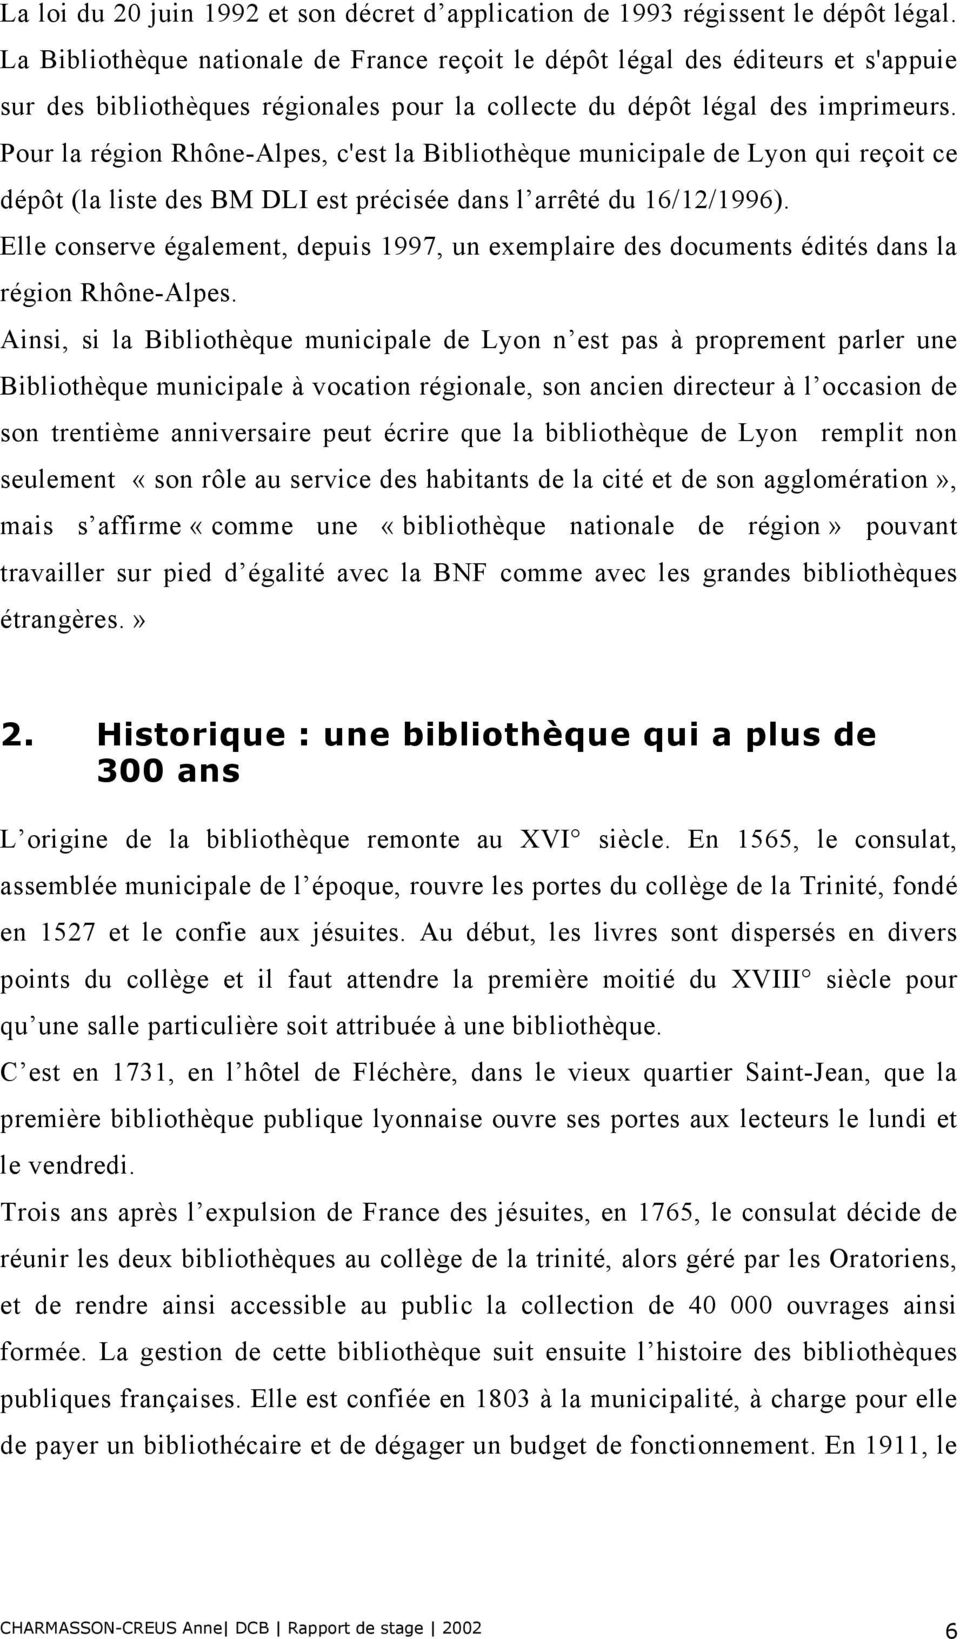 Pour la région Rhône-Alpes, c'est la Bibliothèque municipale de Lyon qui reçoit ce dépôt (la liste des BM DLI est précisée dans l arrêté du 16/12/1996).